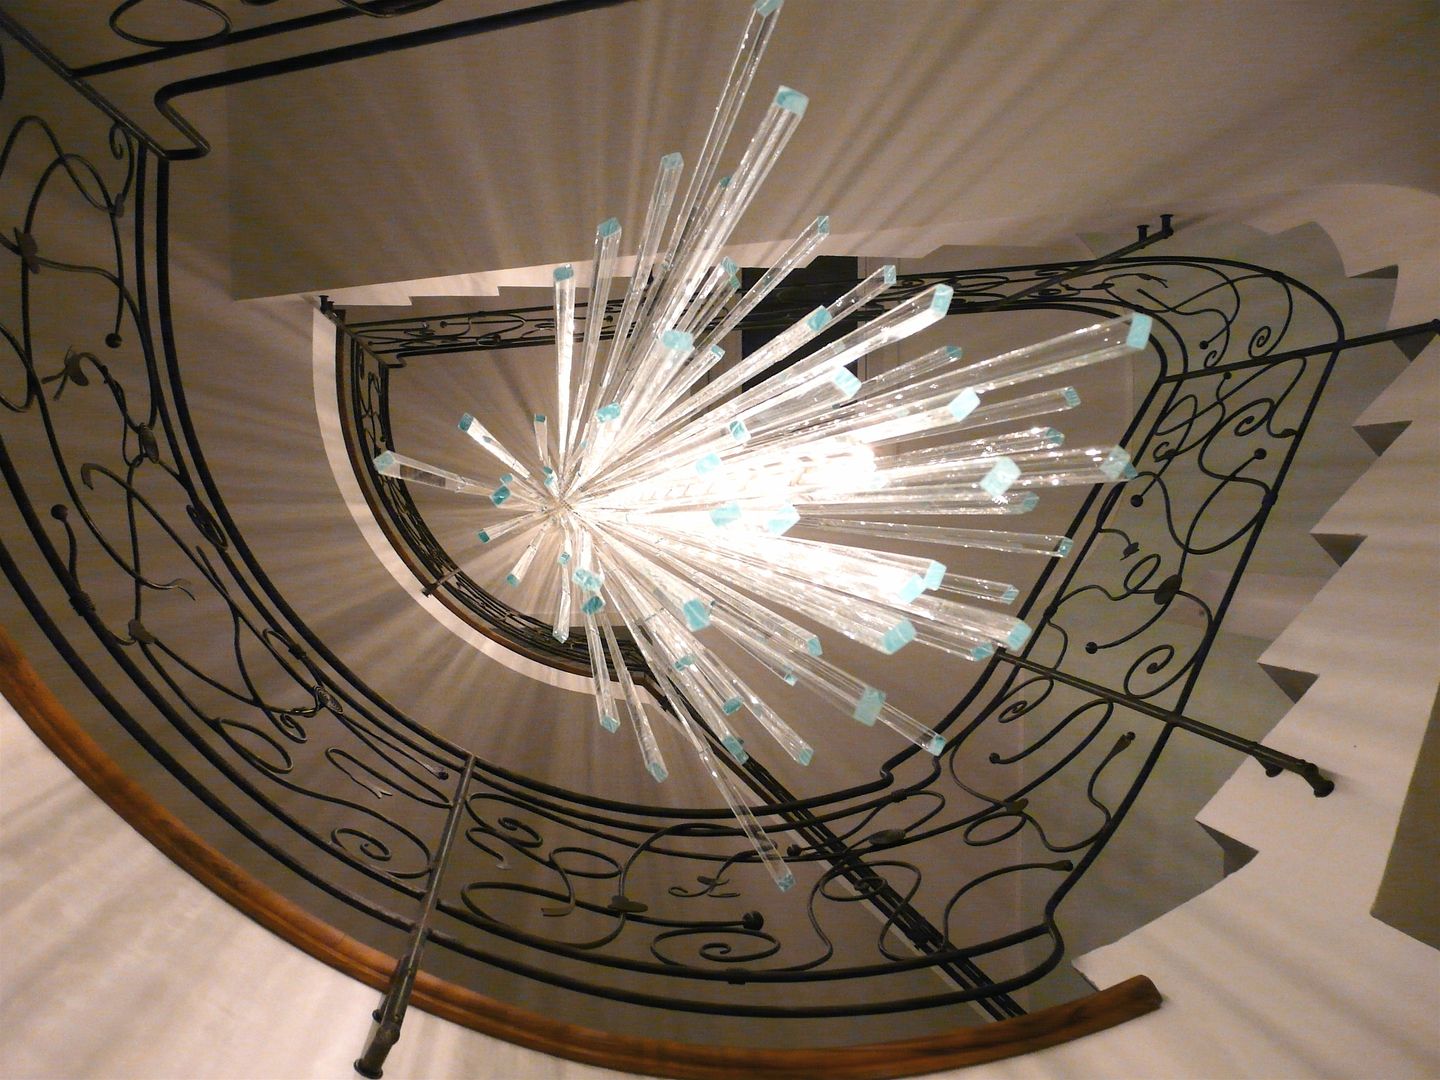 Art, Le Meduse s.a.s. Le Meduse s.a.s. Pasillos, vestíbulos y escaleras de estilo ecléctico Iluminación